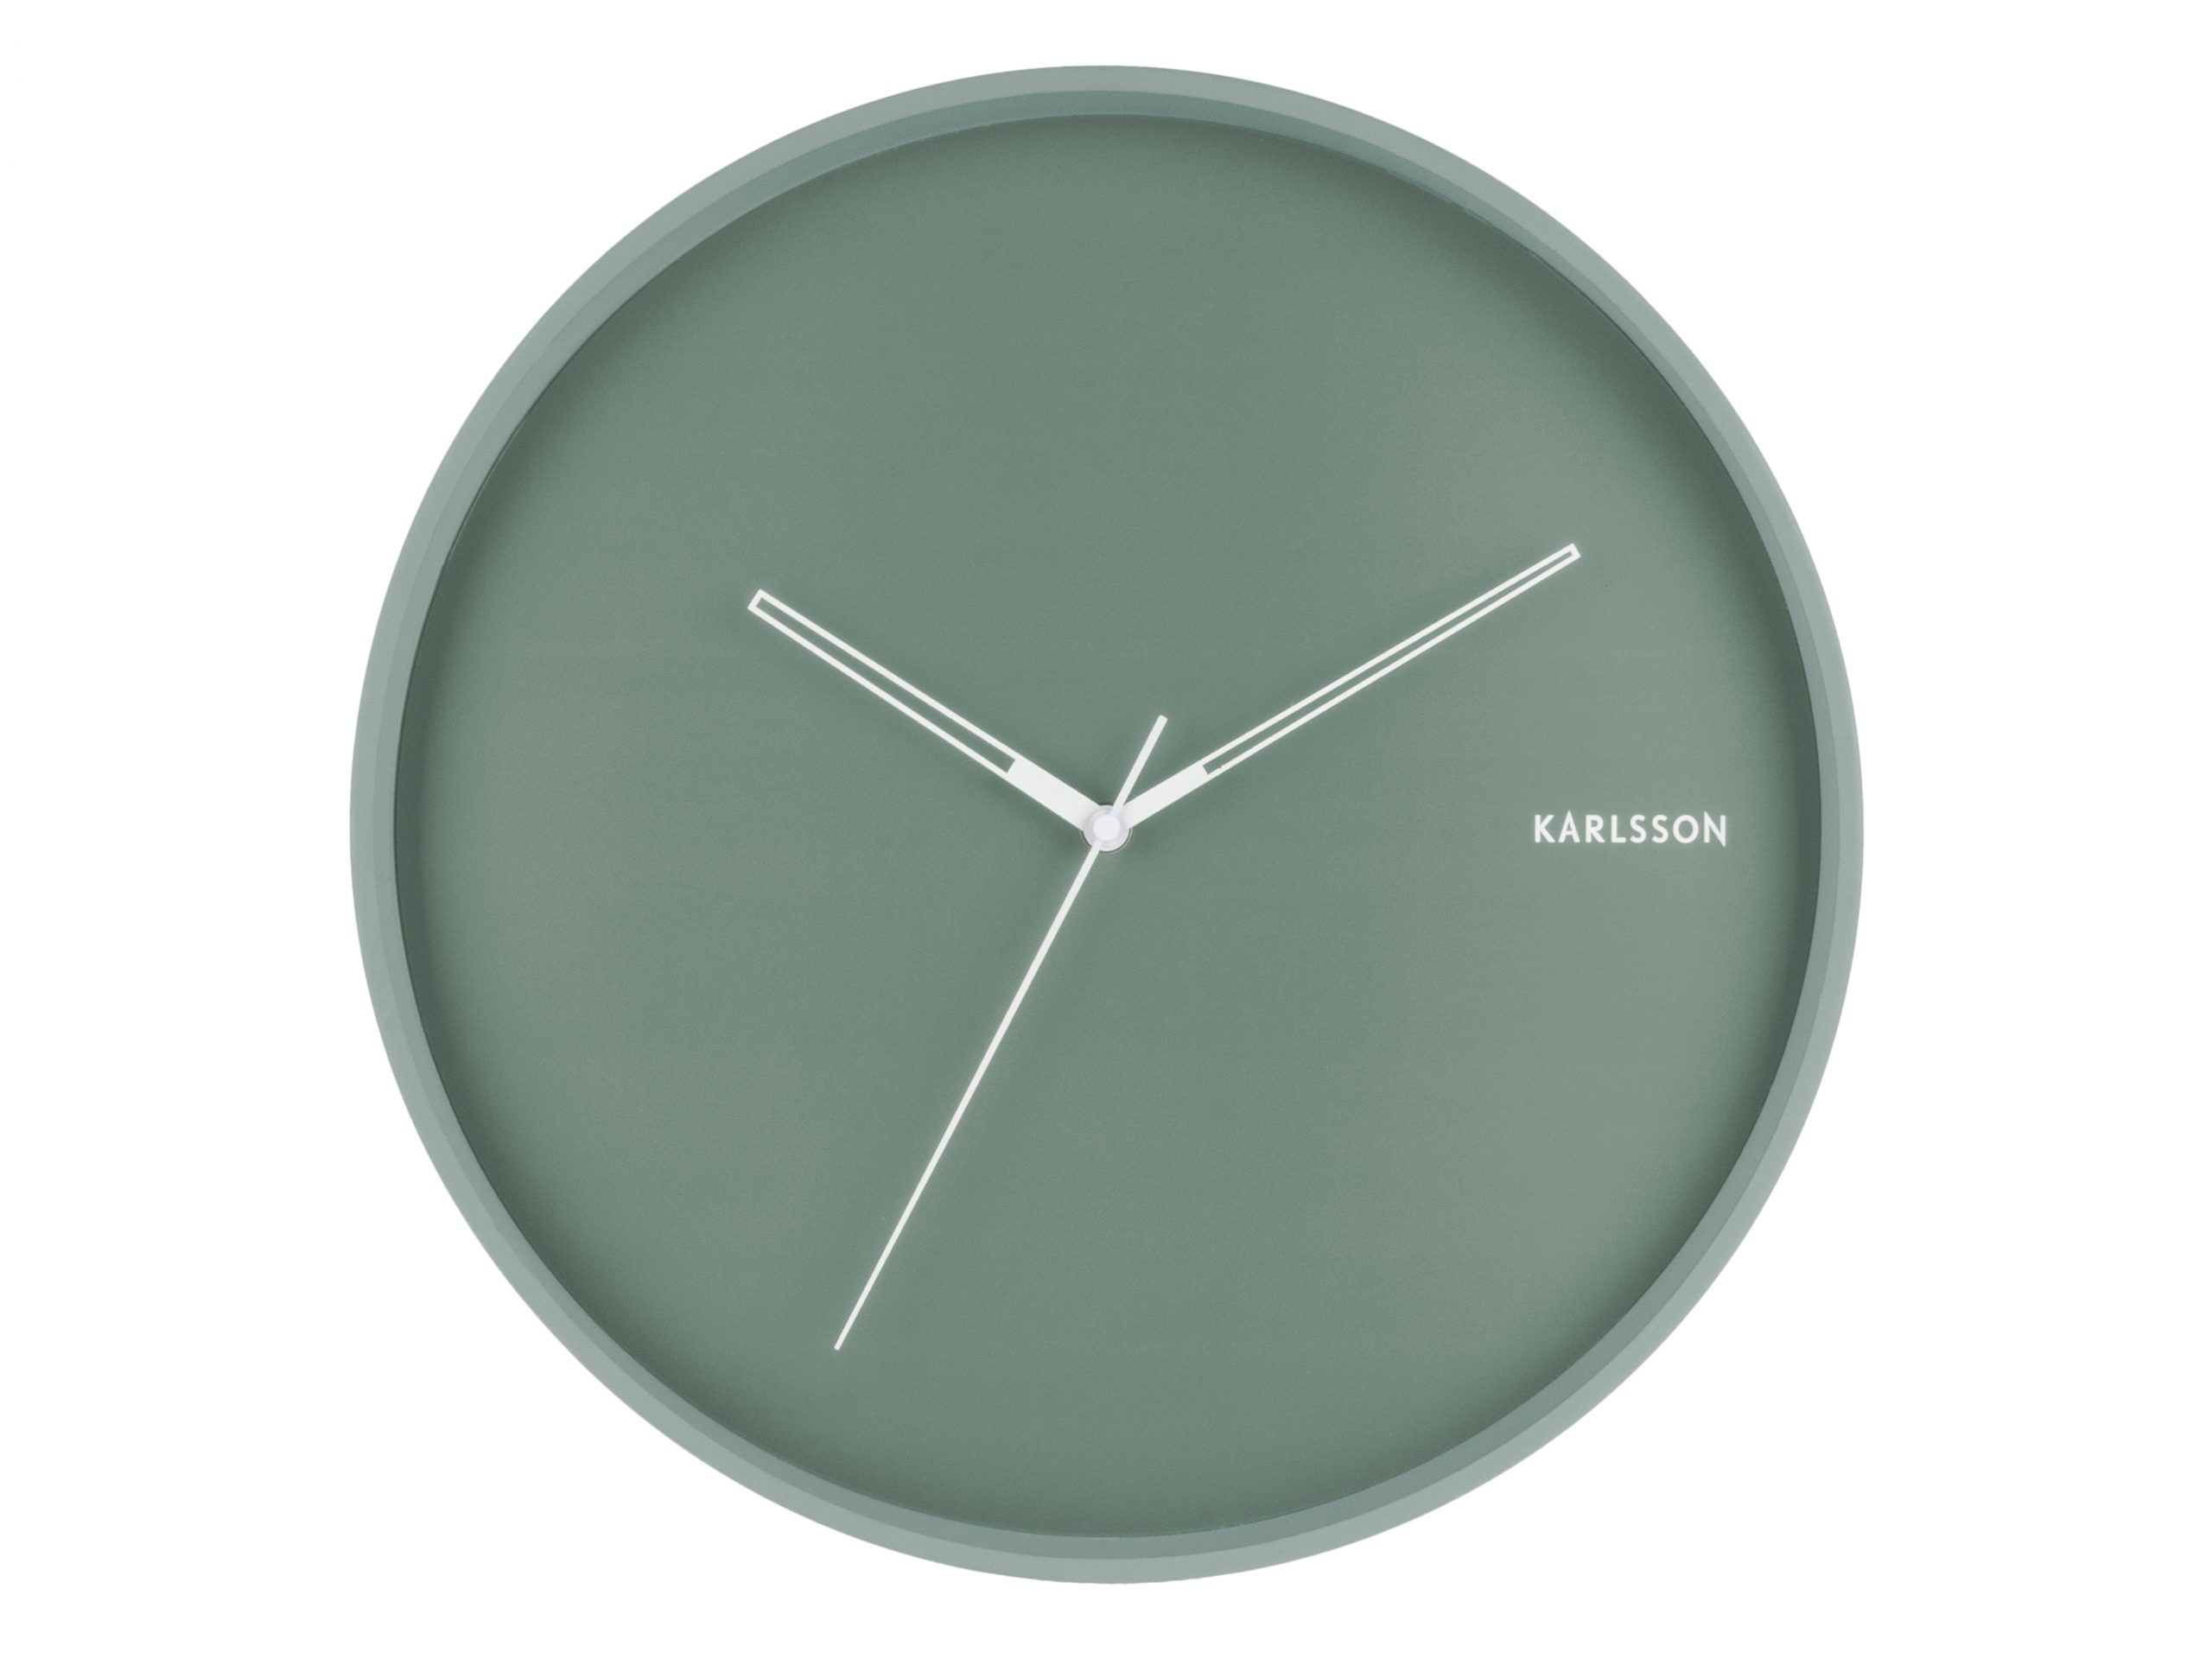 Aanpassen Lijken Extreem belangrijk Karlsson - Wall Clock Hue Green - Wandklok groen - BijCees